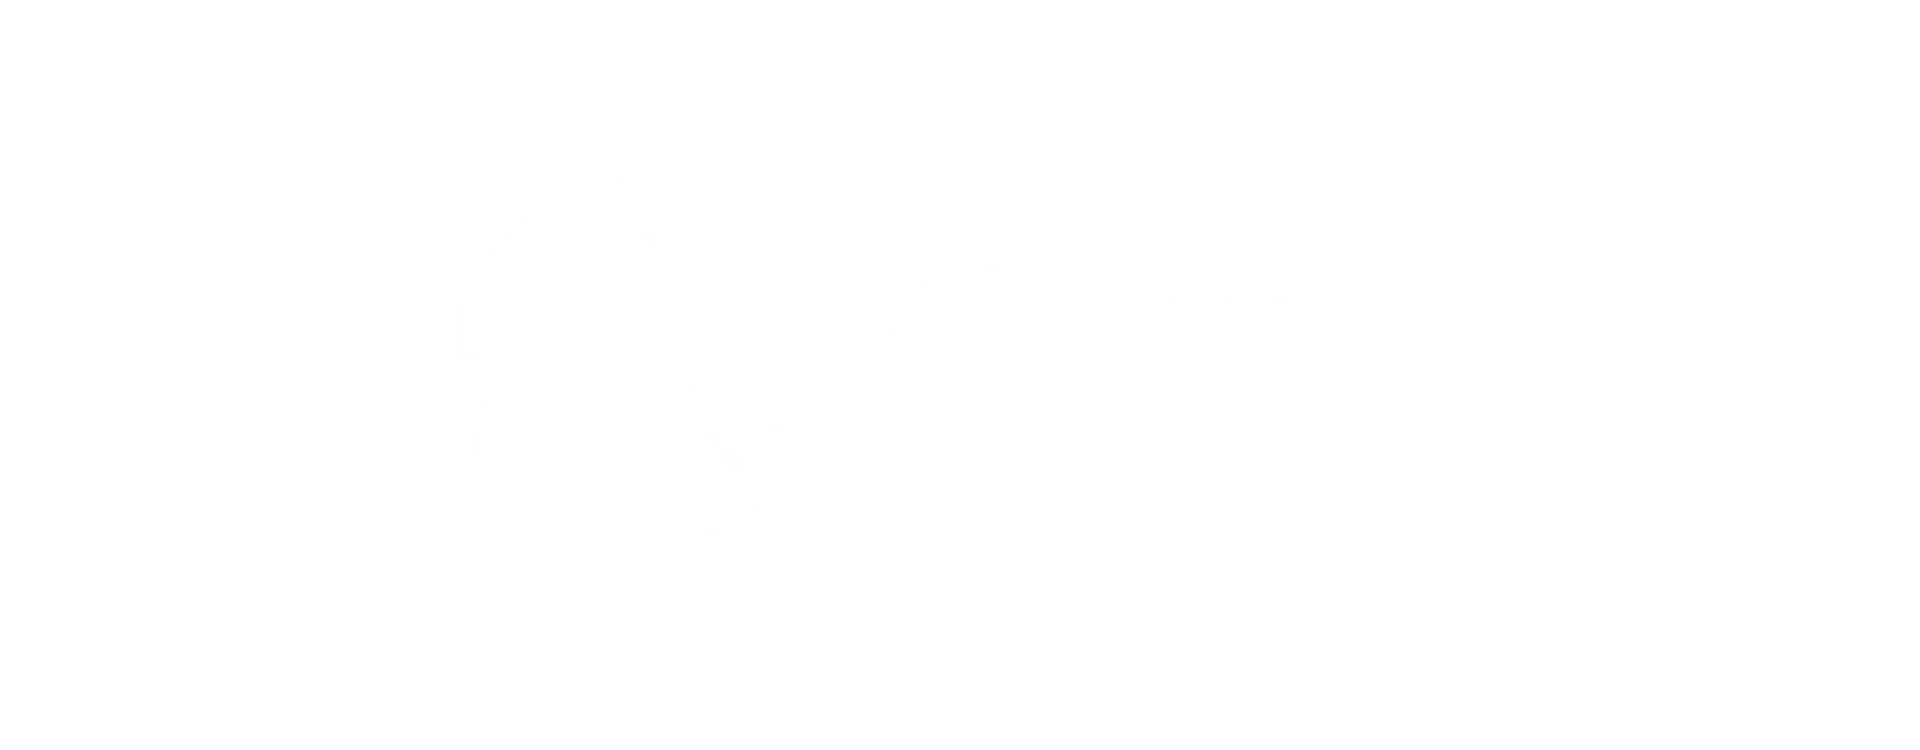 Alsafer logo - transparent